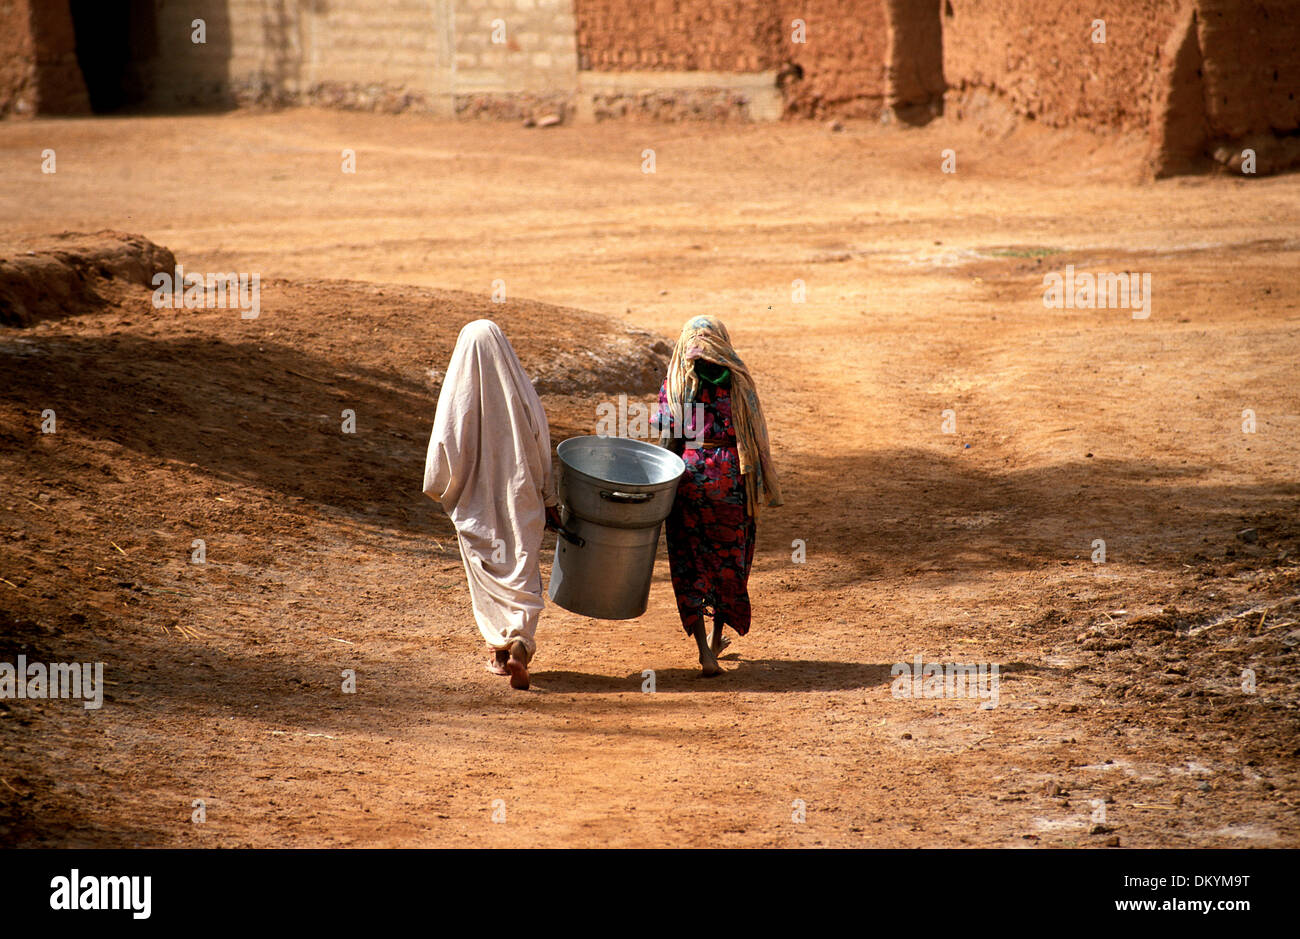 La population touareg de Timimoun en Algérie. Deux femmes à la maison du marché. Banque D'Images